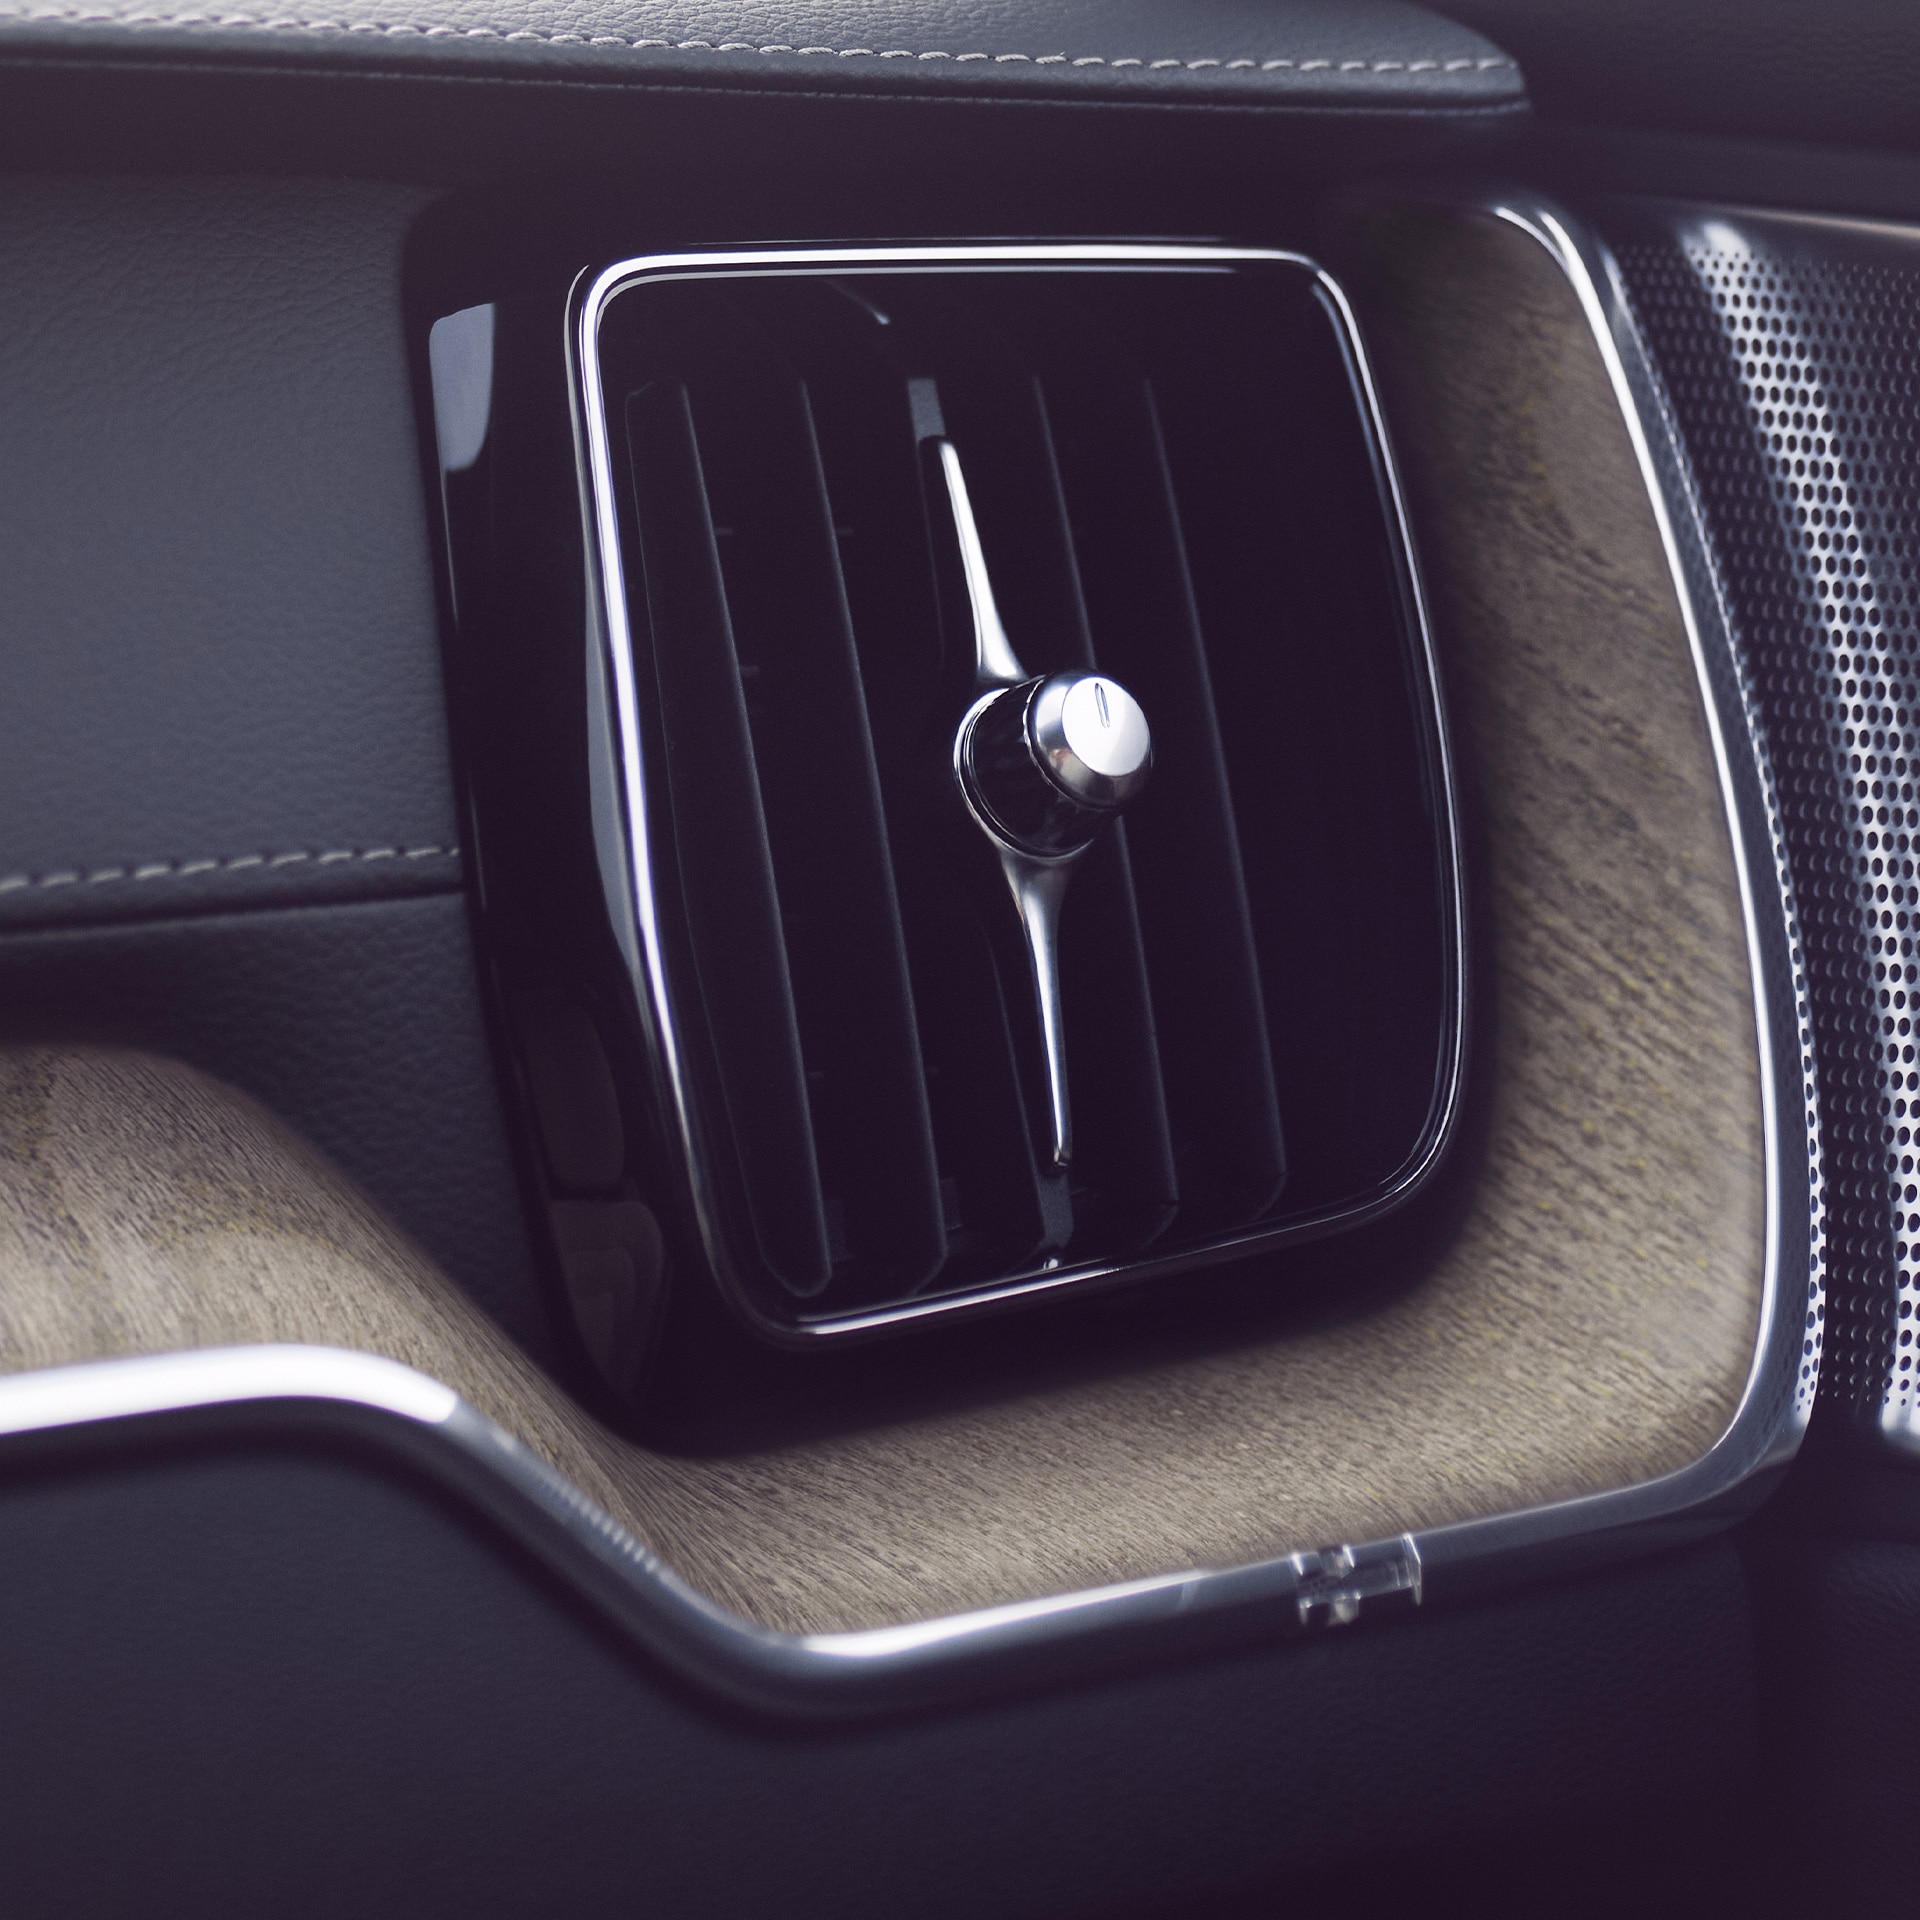 Усовершенствованный очиститель воздуха Volvo XC60 помогает вам и вашим пассажирам наслаждаться более качественным и здоровым воздухом.